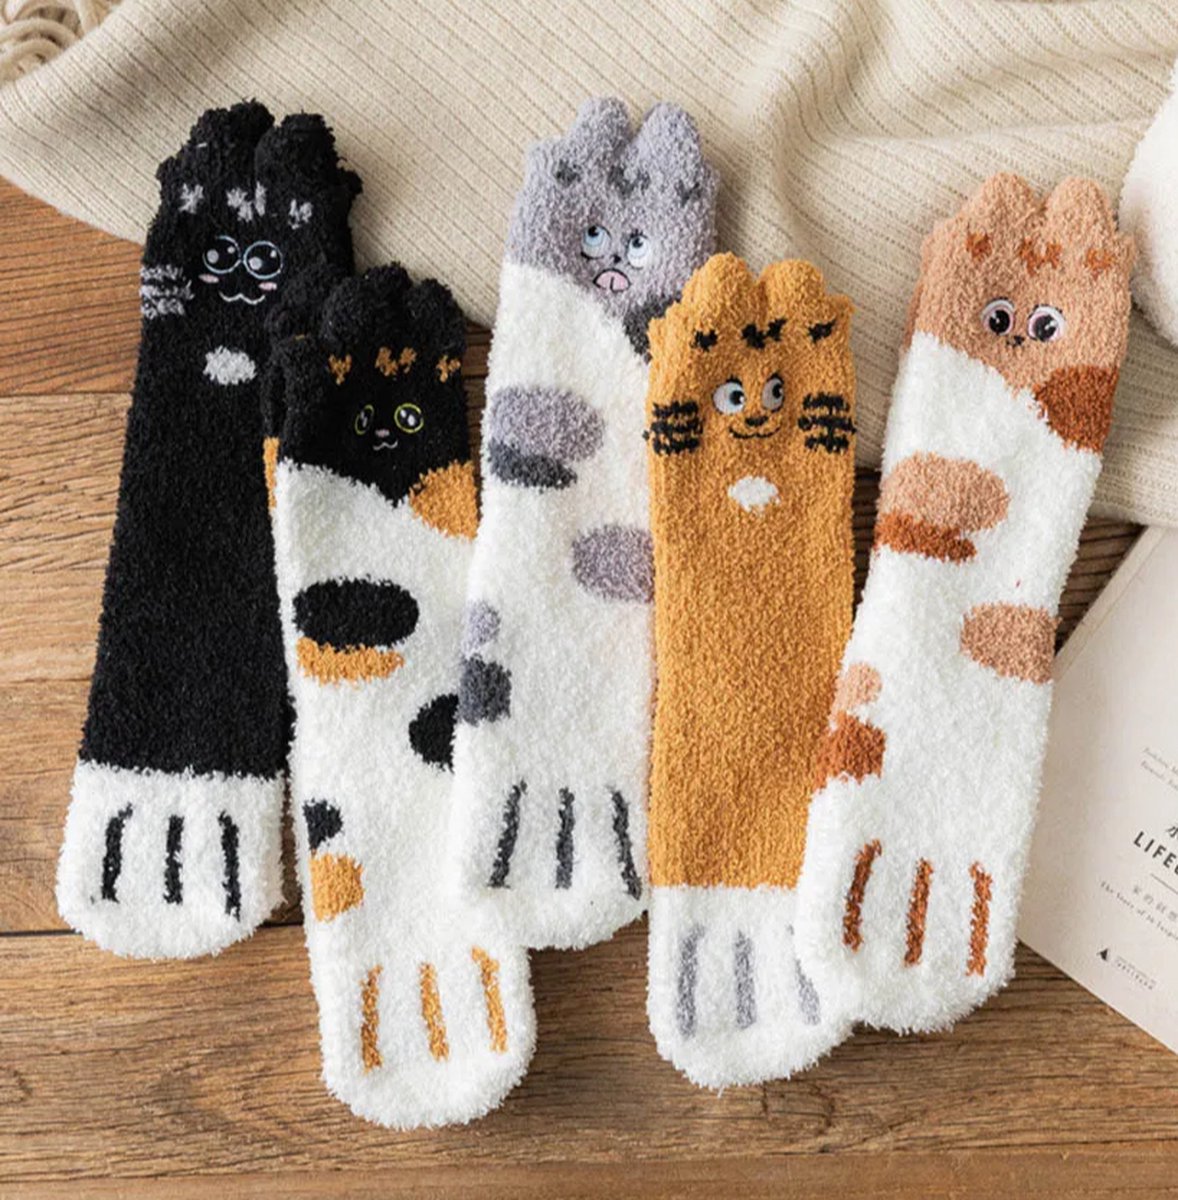 Warme Sokken dames 3 paar - fluffy sokken - huissokken - print kat met ogen - bruin / zwart / grijs / wit - 36-40 - mix - winter sokken - dikke sokken